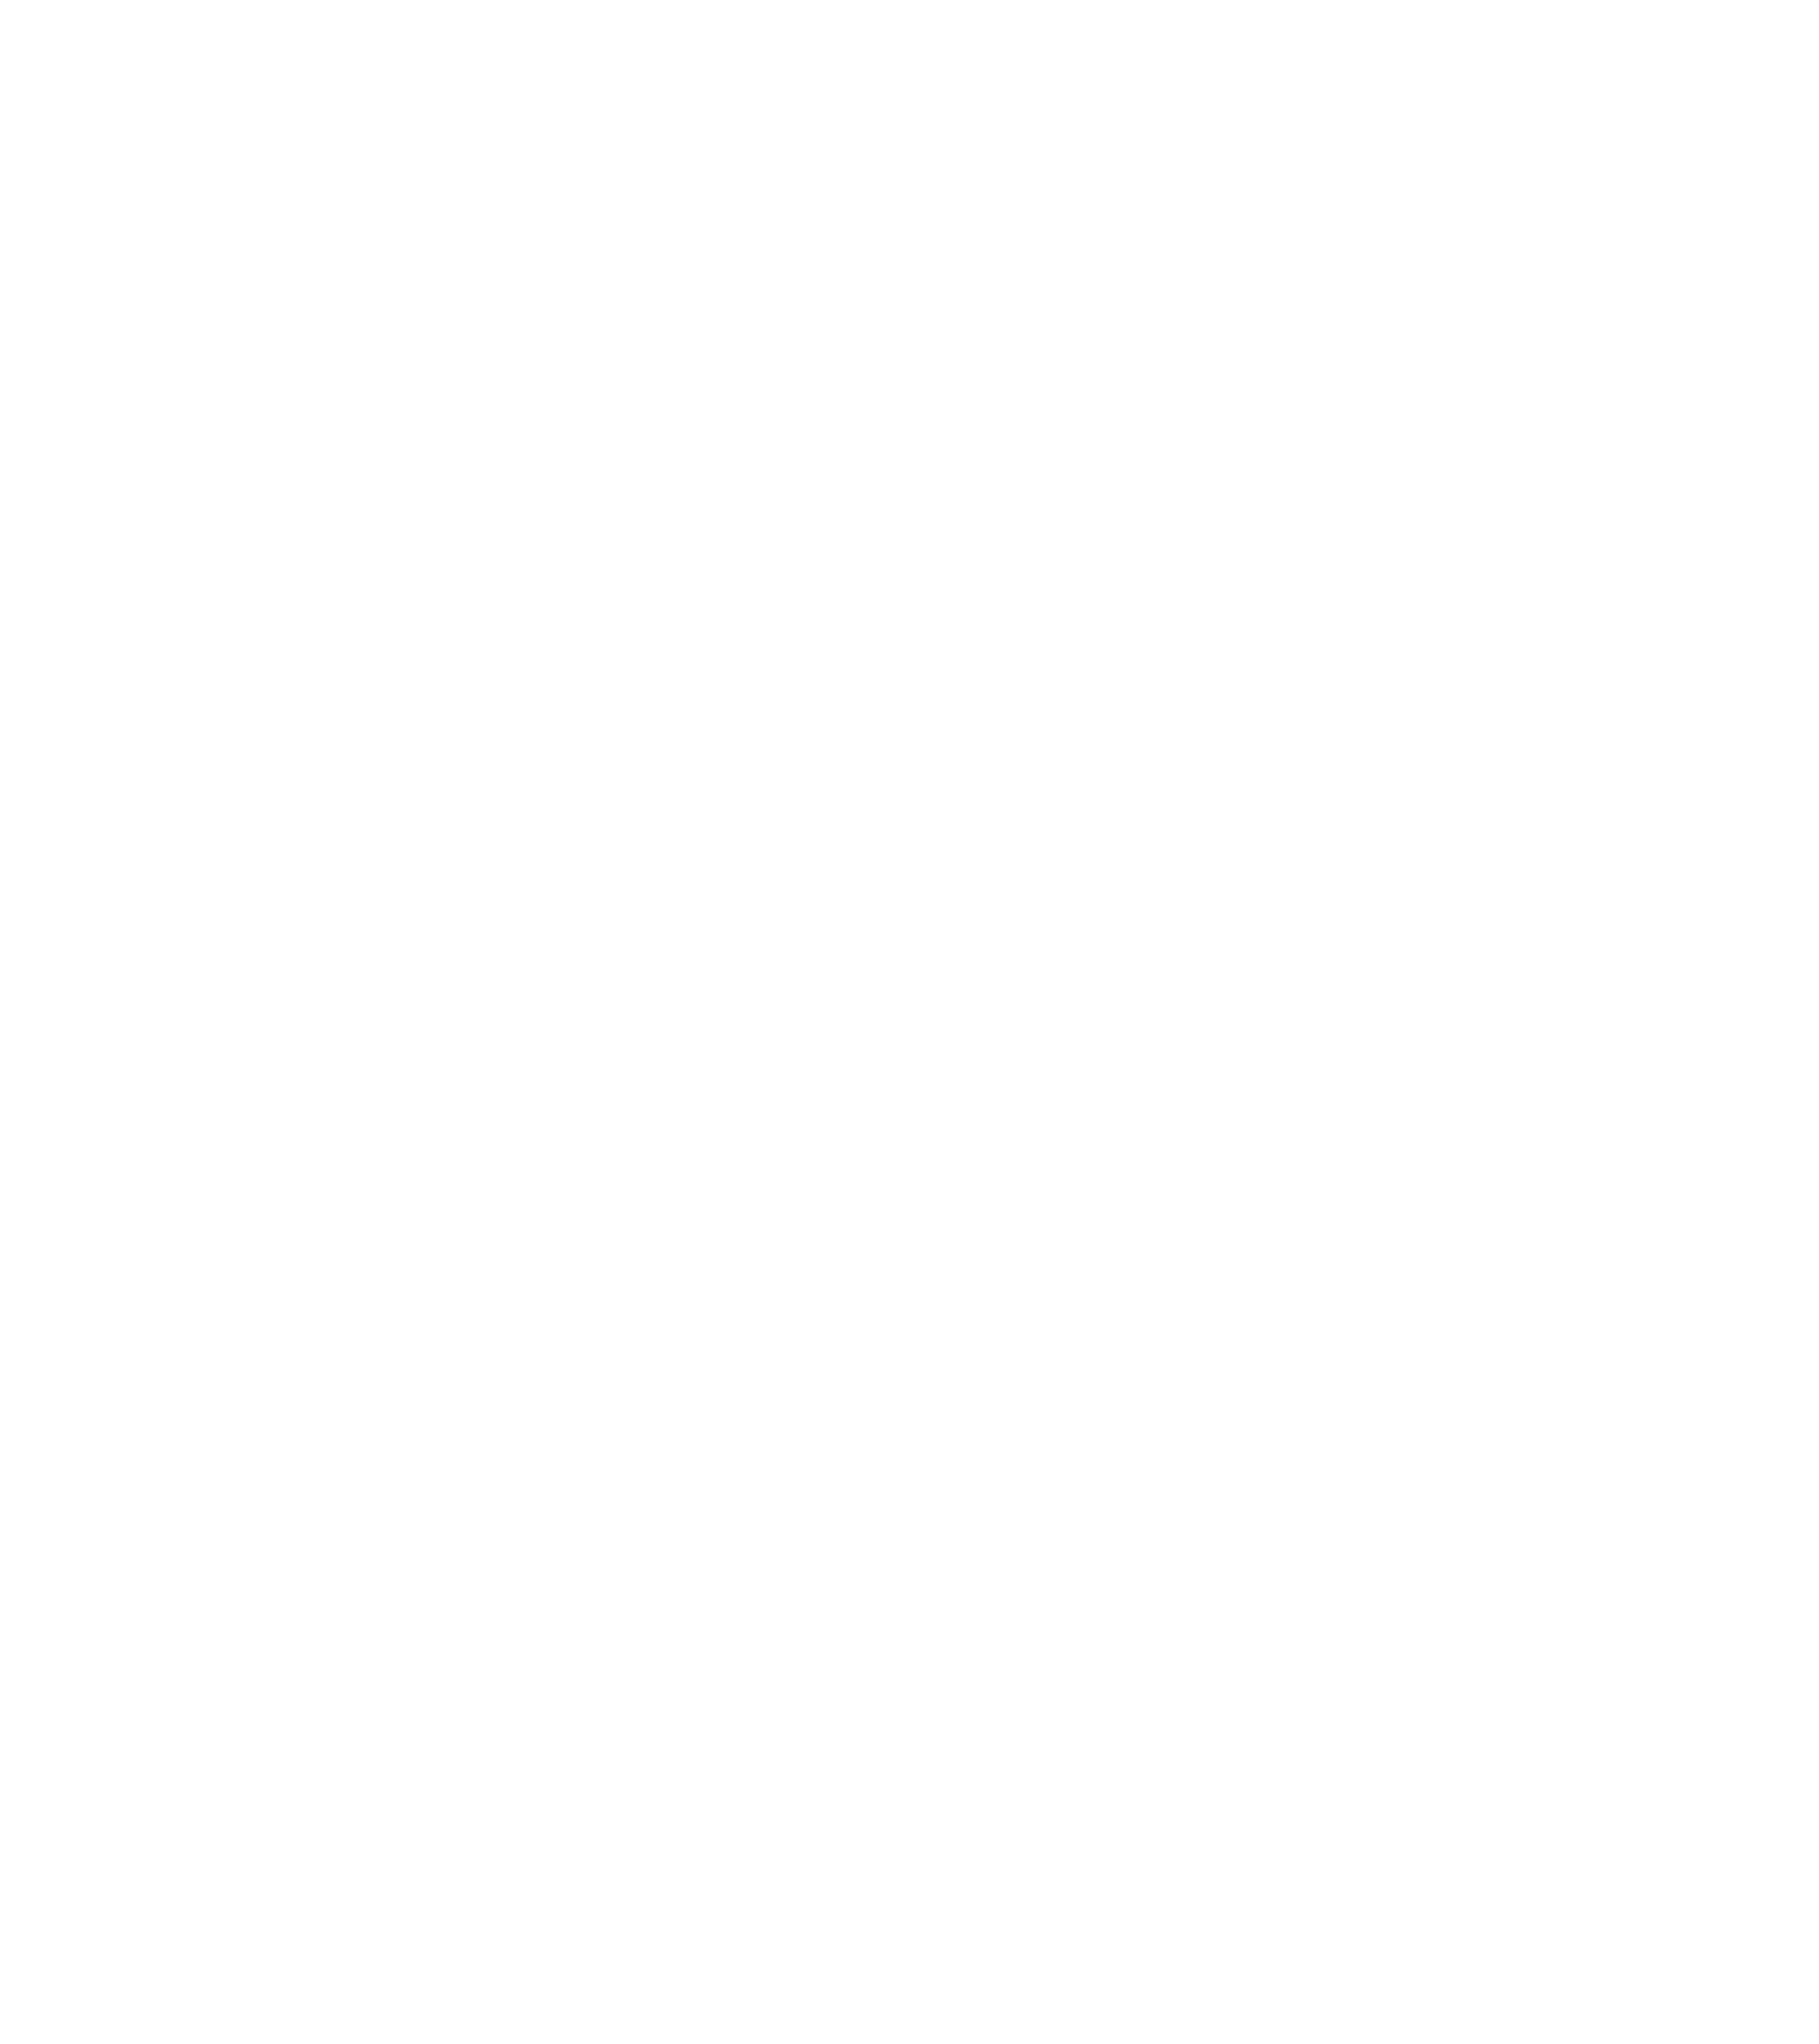 Y-12 Federal Credit Union: Y12fcu.org